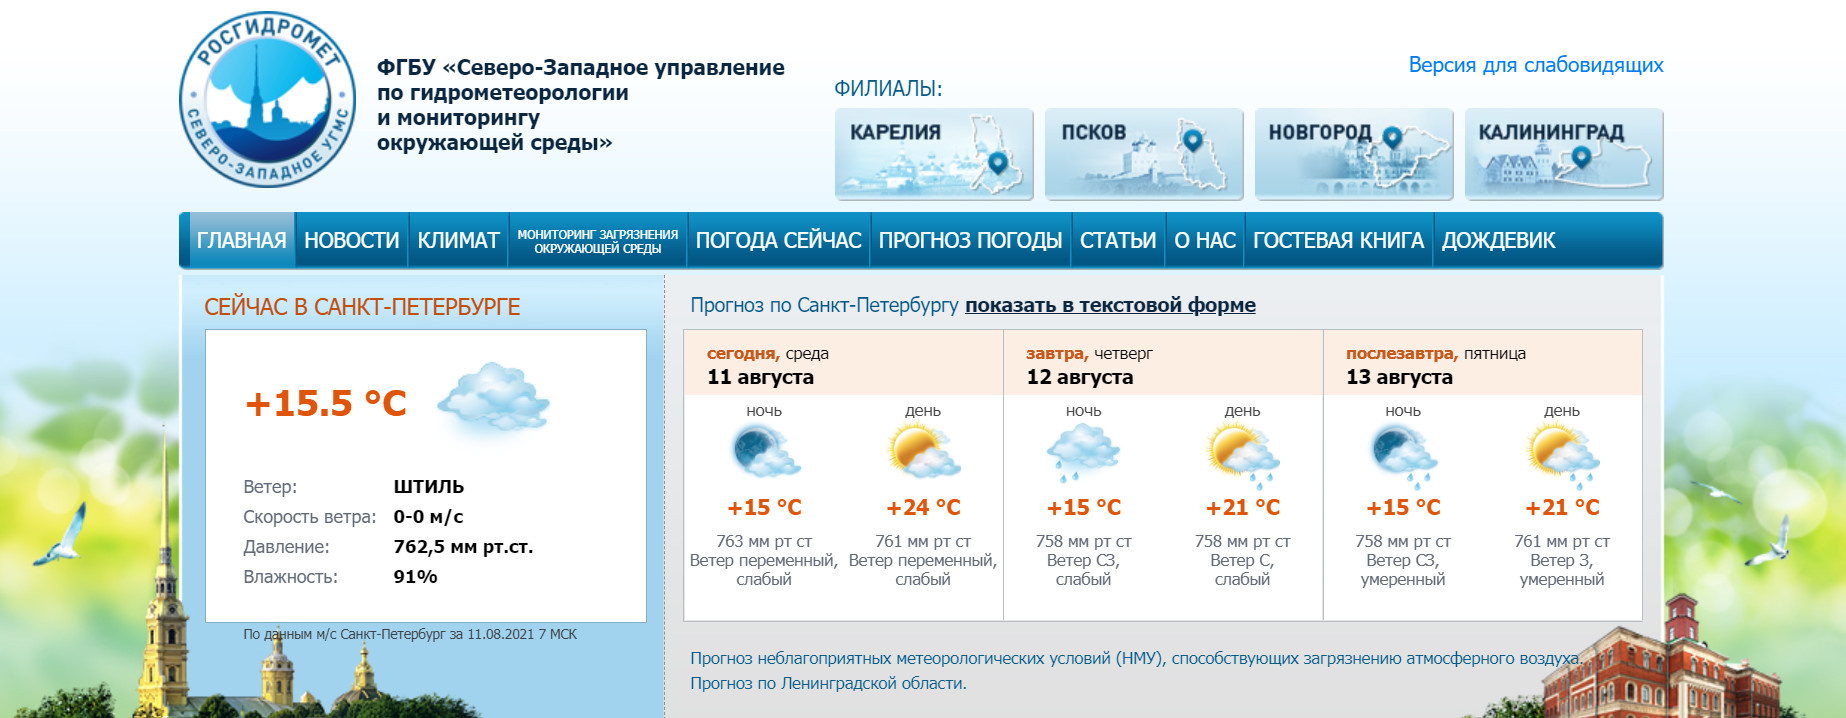 Скриншот с www.meteo.nw.ru